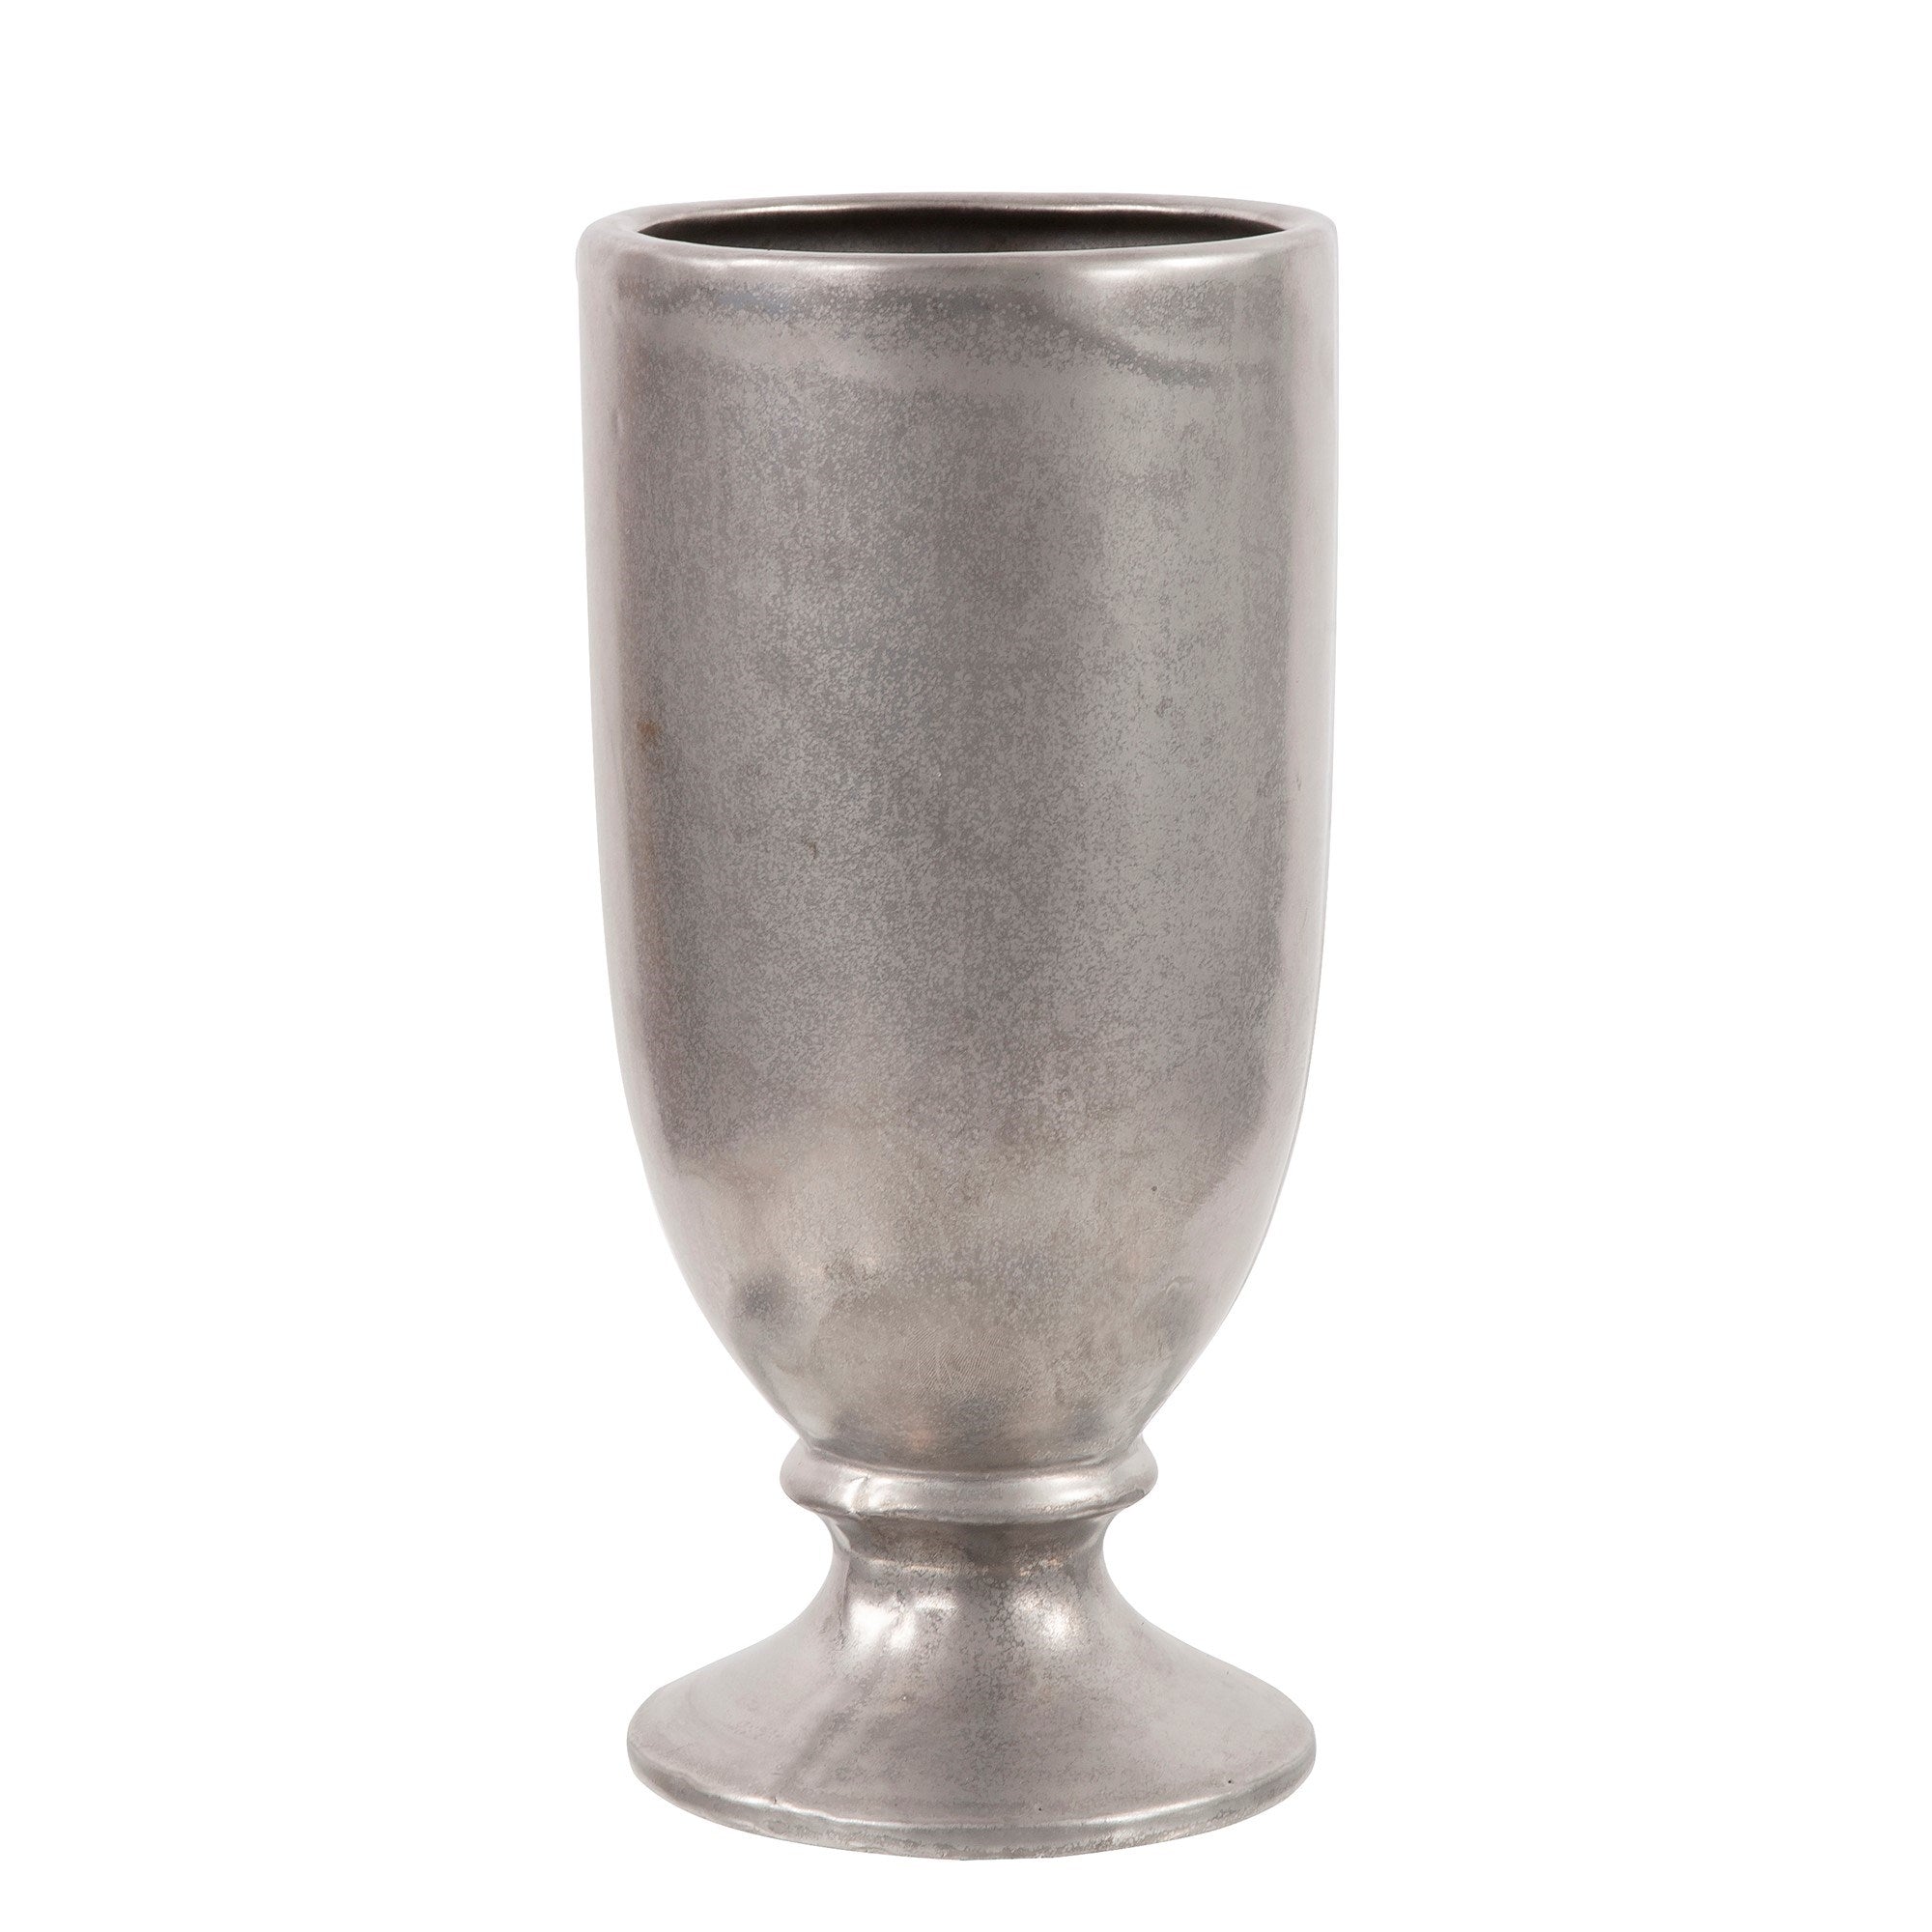 Country Silver Ceramic Vase